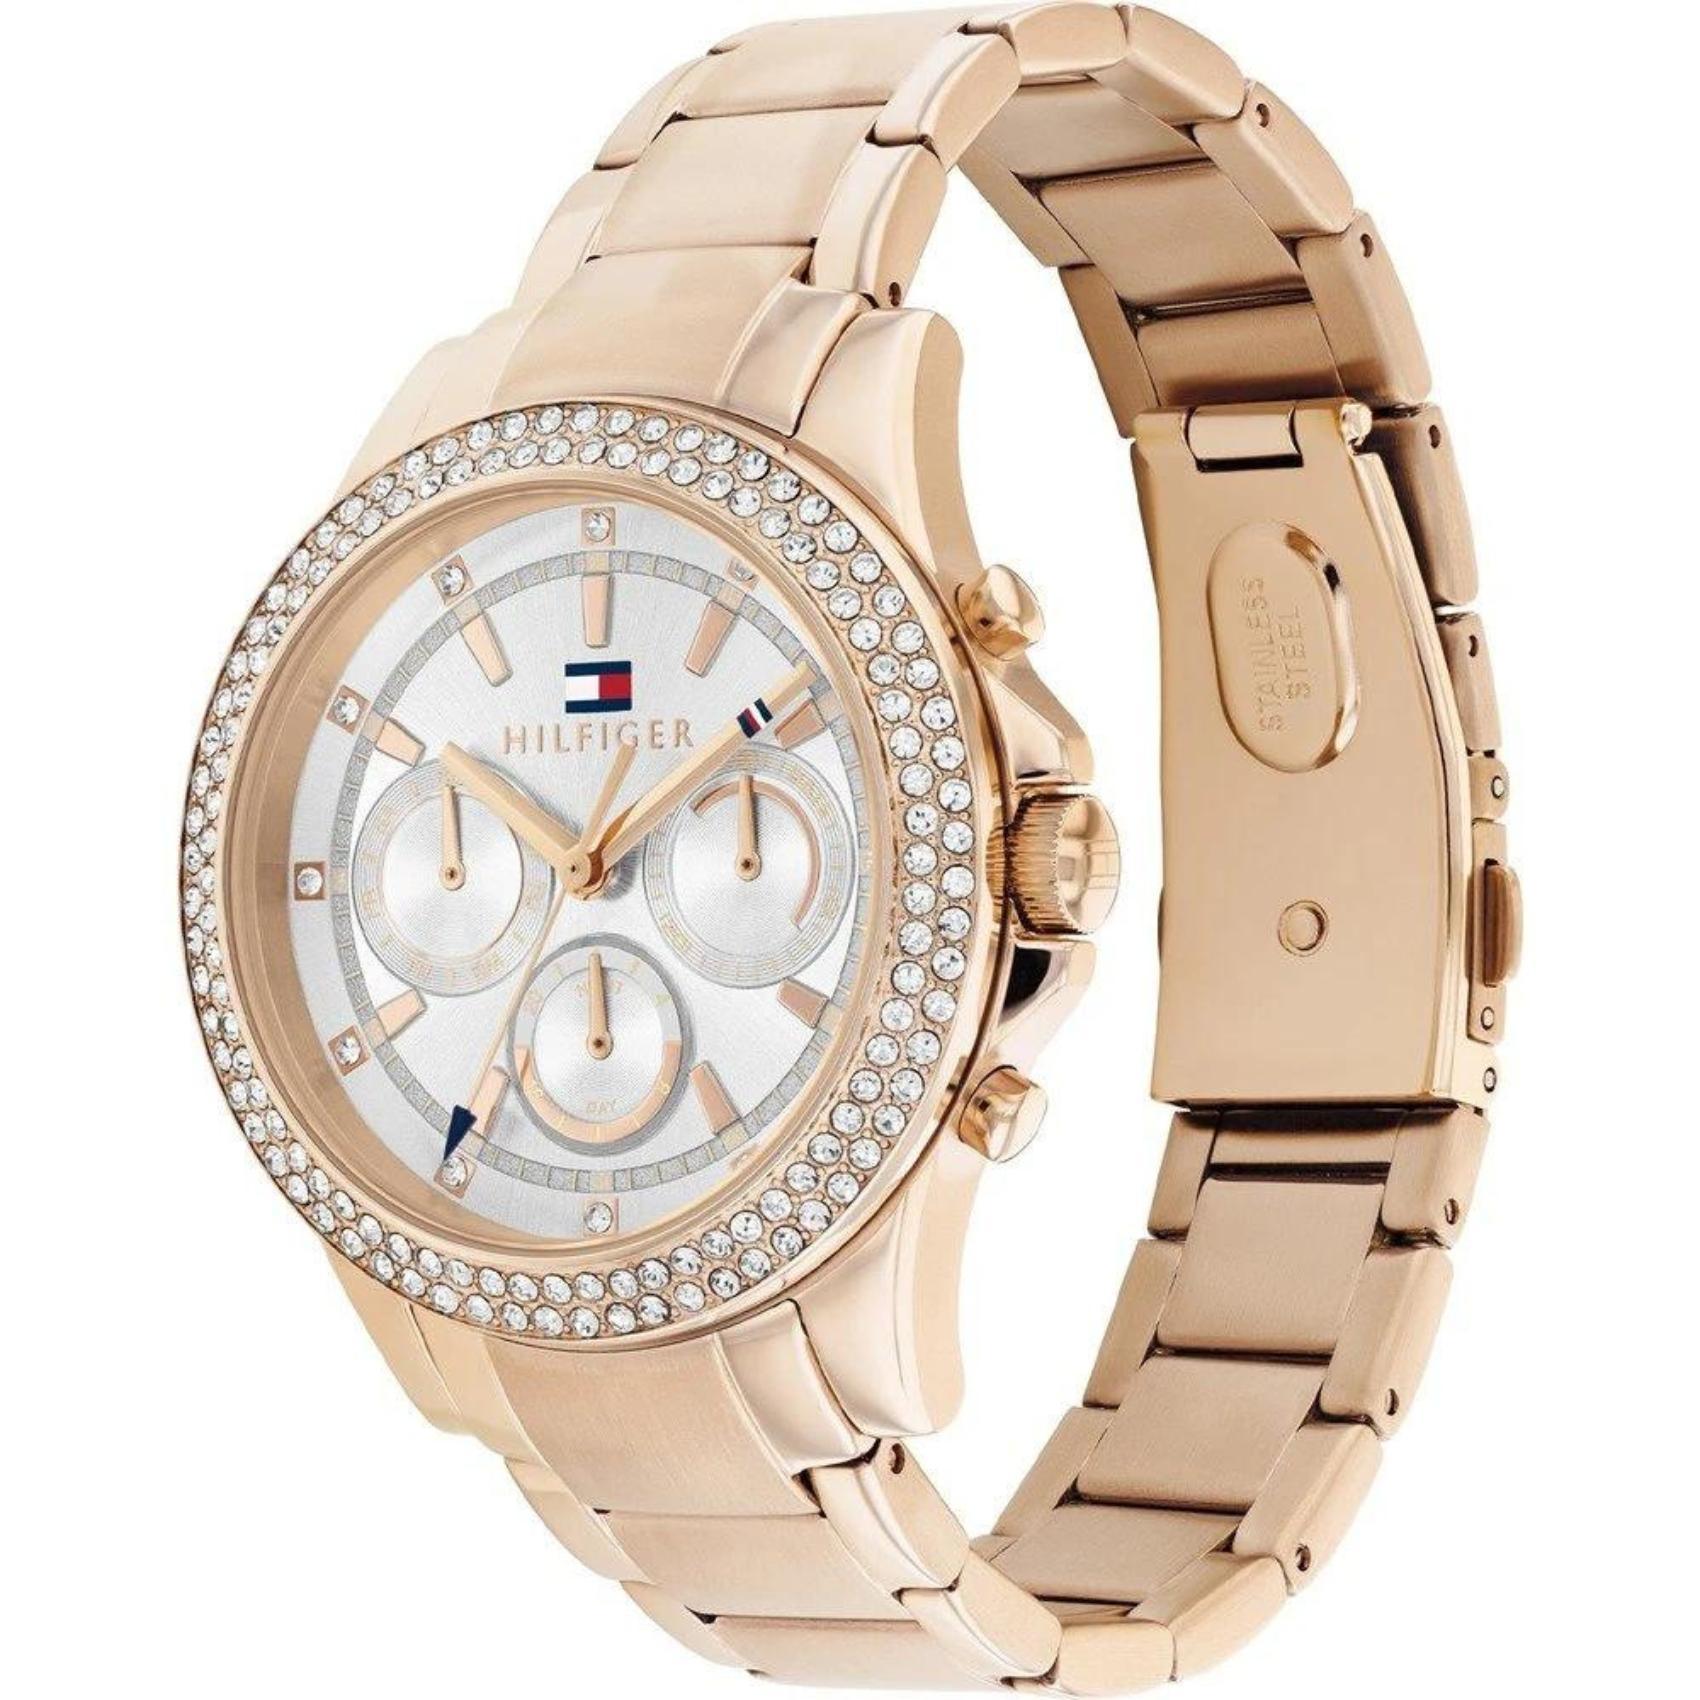 Γυναικείο ρολόι Tommy Hilfiger Haven 1782624 με ροζ χρυσό ατσάλινο μπρασελέ και ροζ χρυσό καντράν διαμέτρου 38mm με ημέρα-ημερομηνία και ζιργκόν.